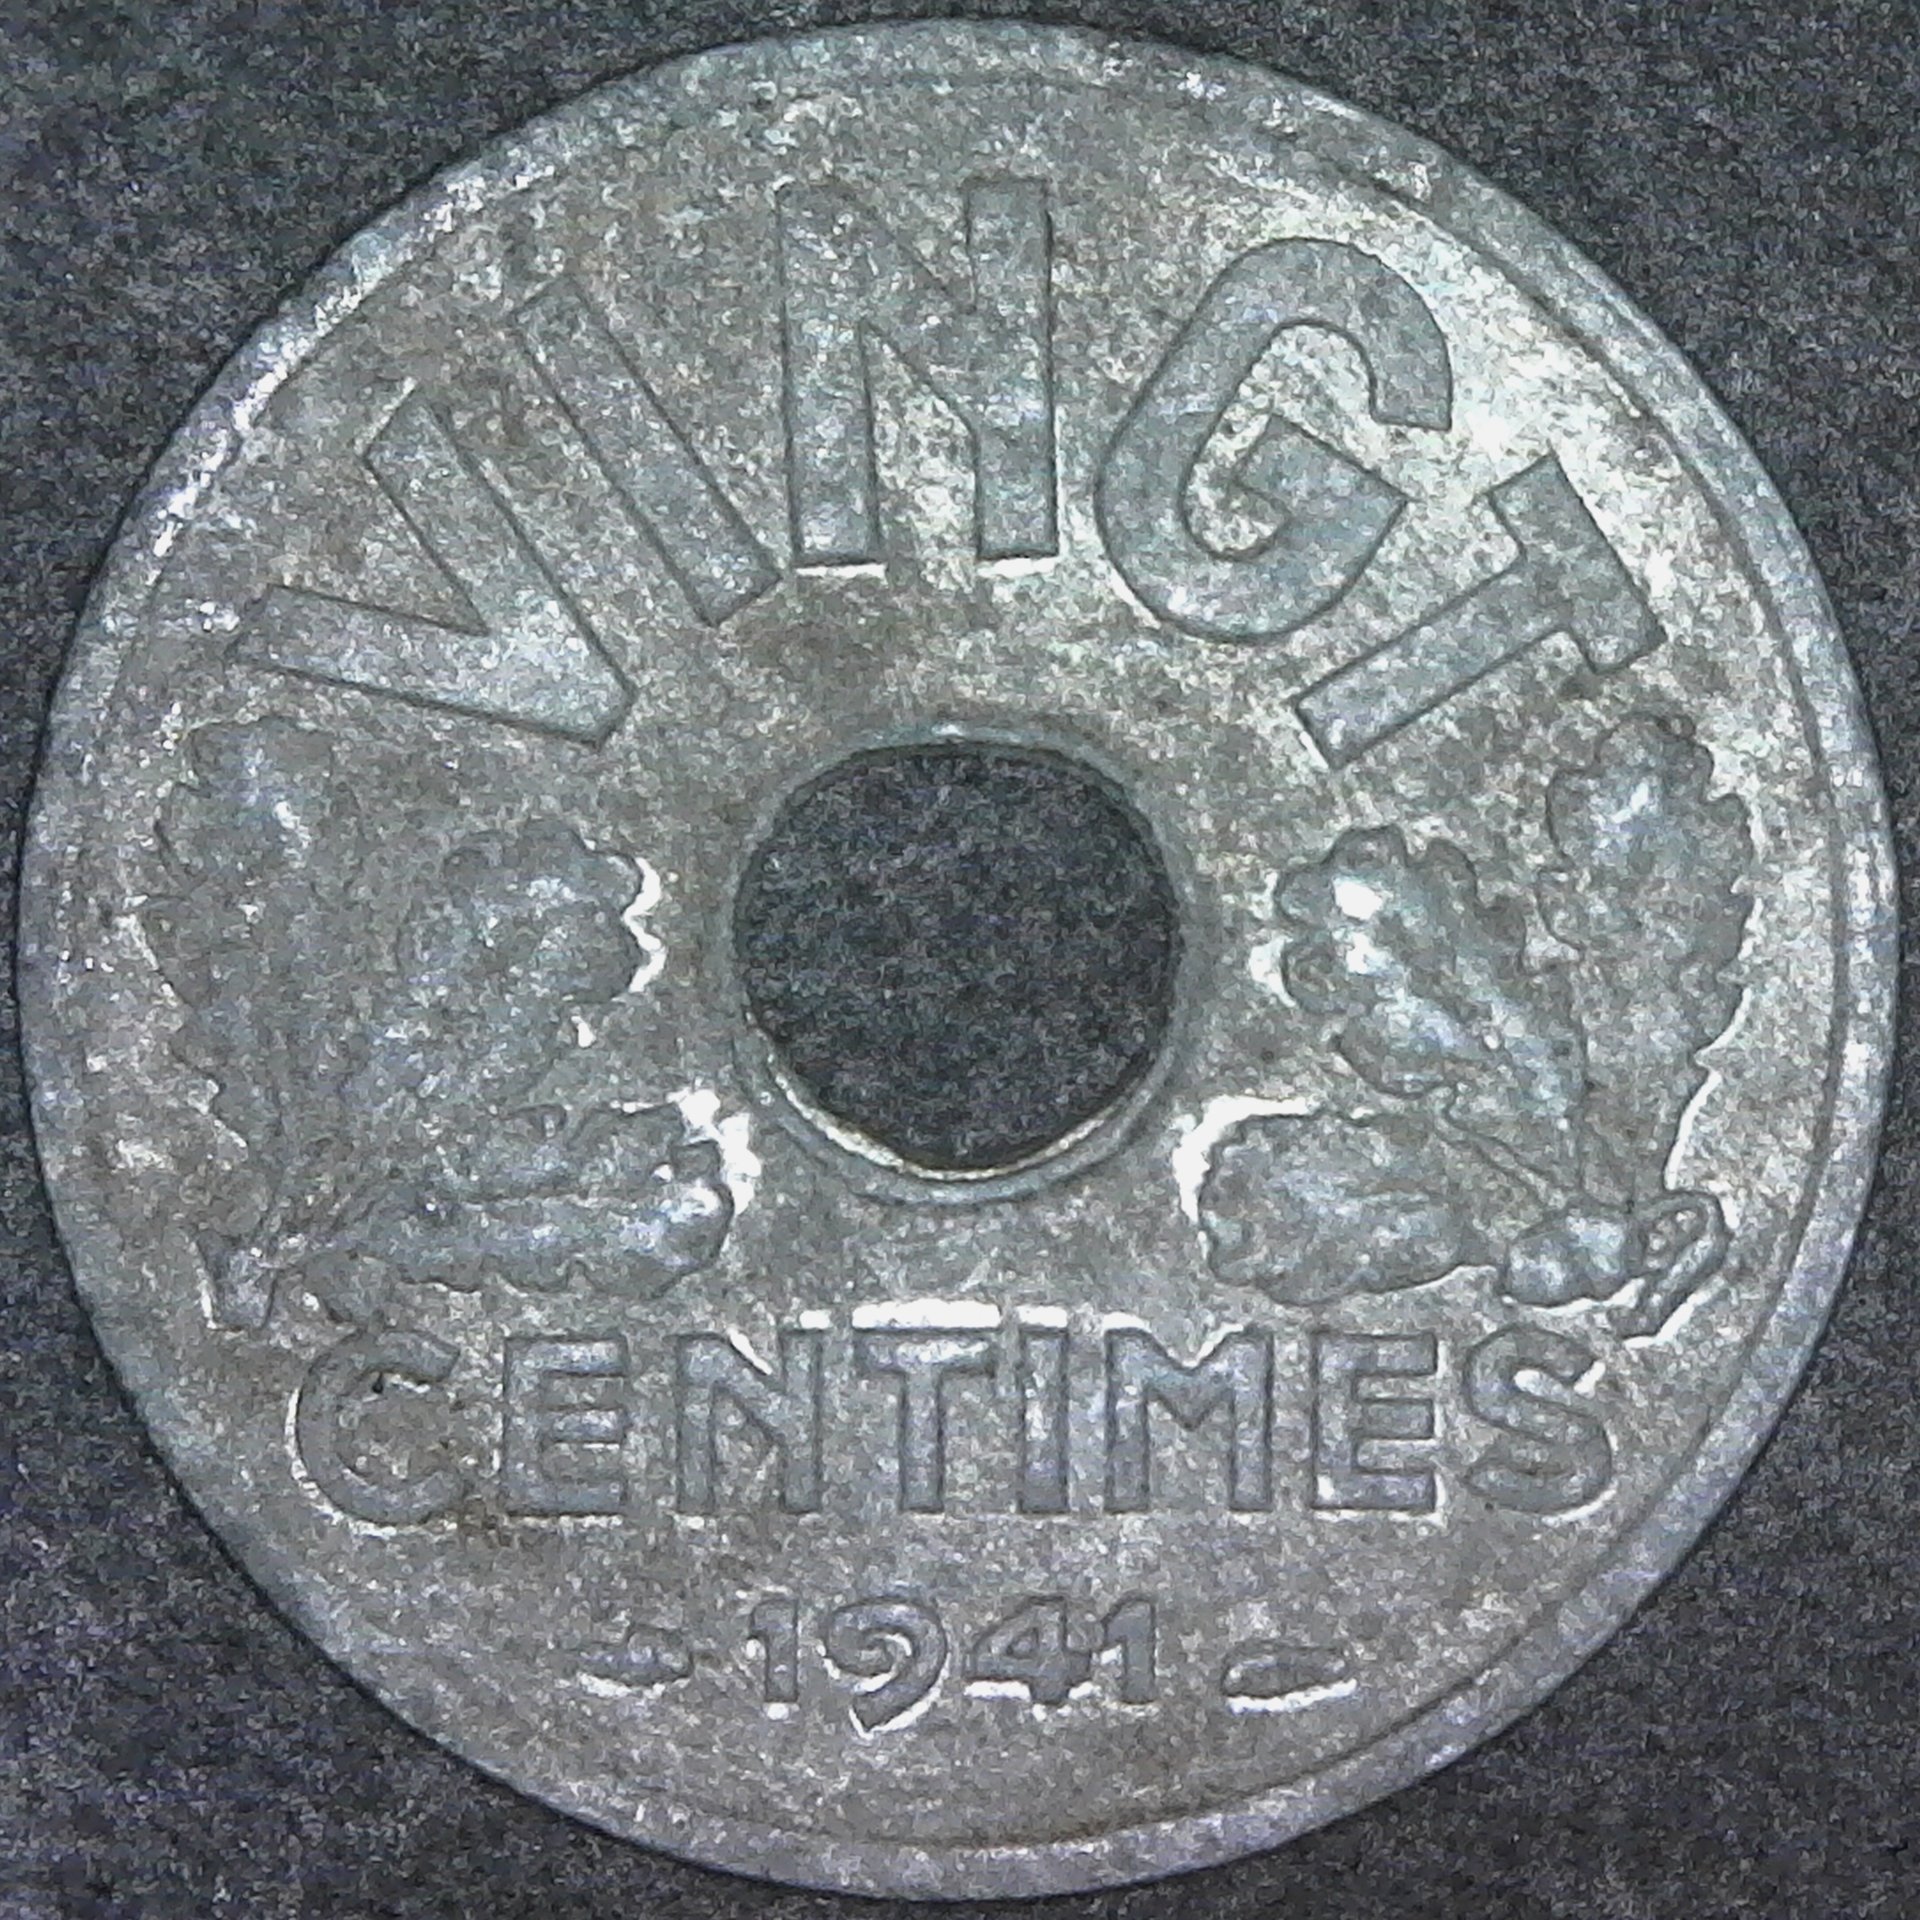 France Vingt centimes 1941 obverse.jpg